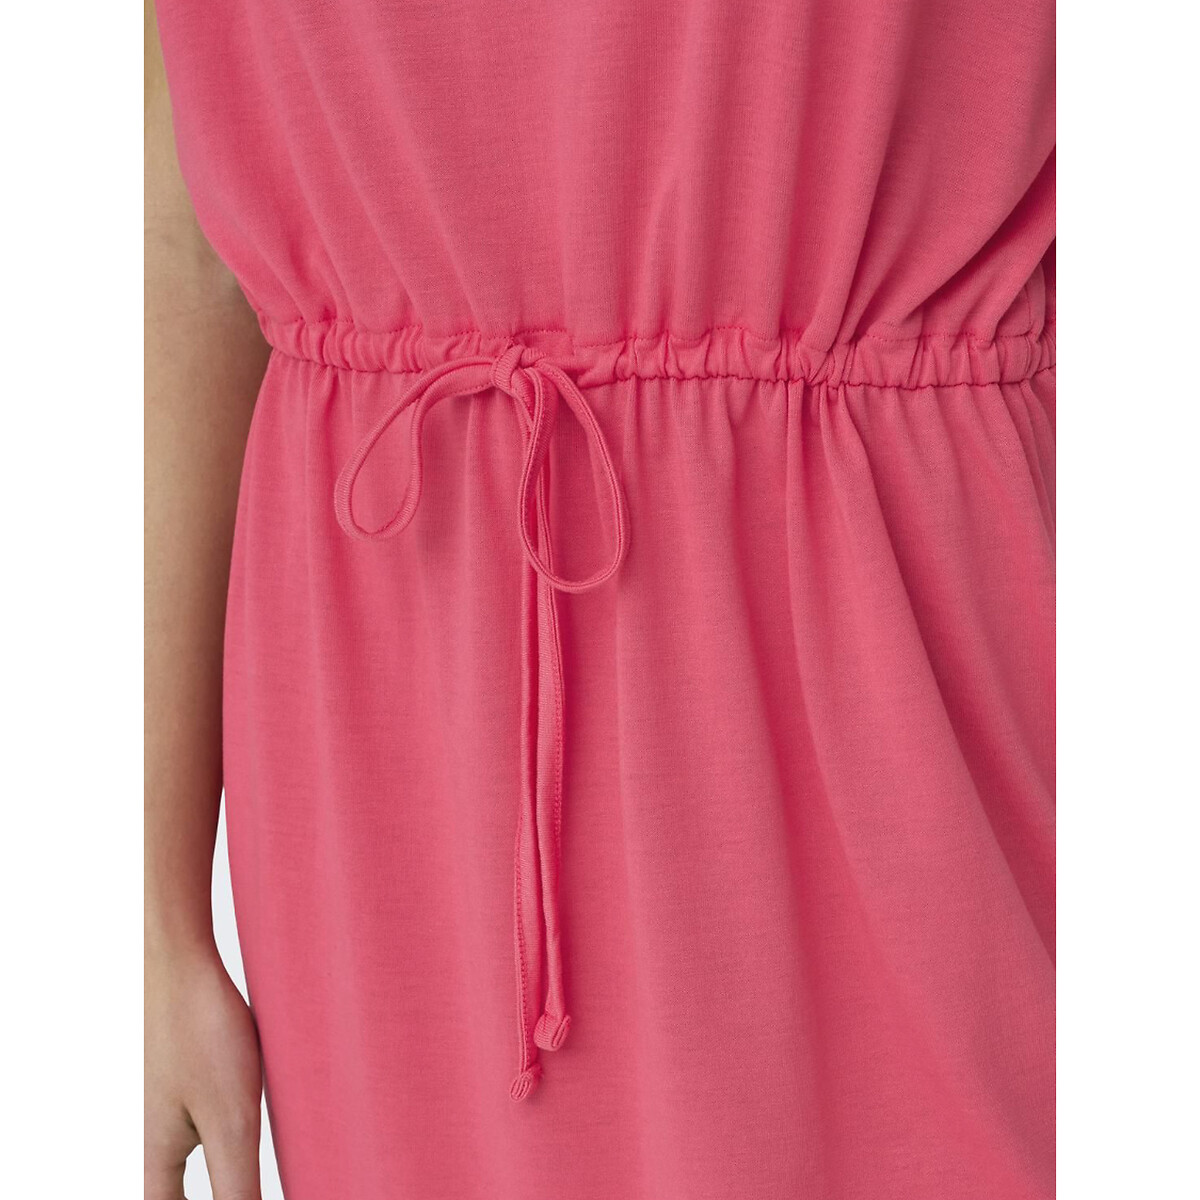 Платье короткое с V-образным вырезом короткими рукавами с завязками  XL розовый LaRedoute, размер XL - фото 4